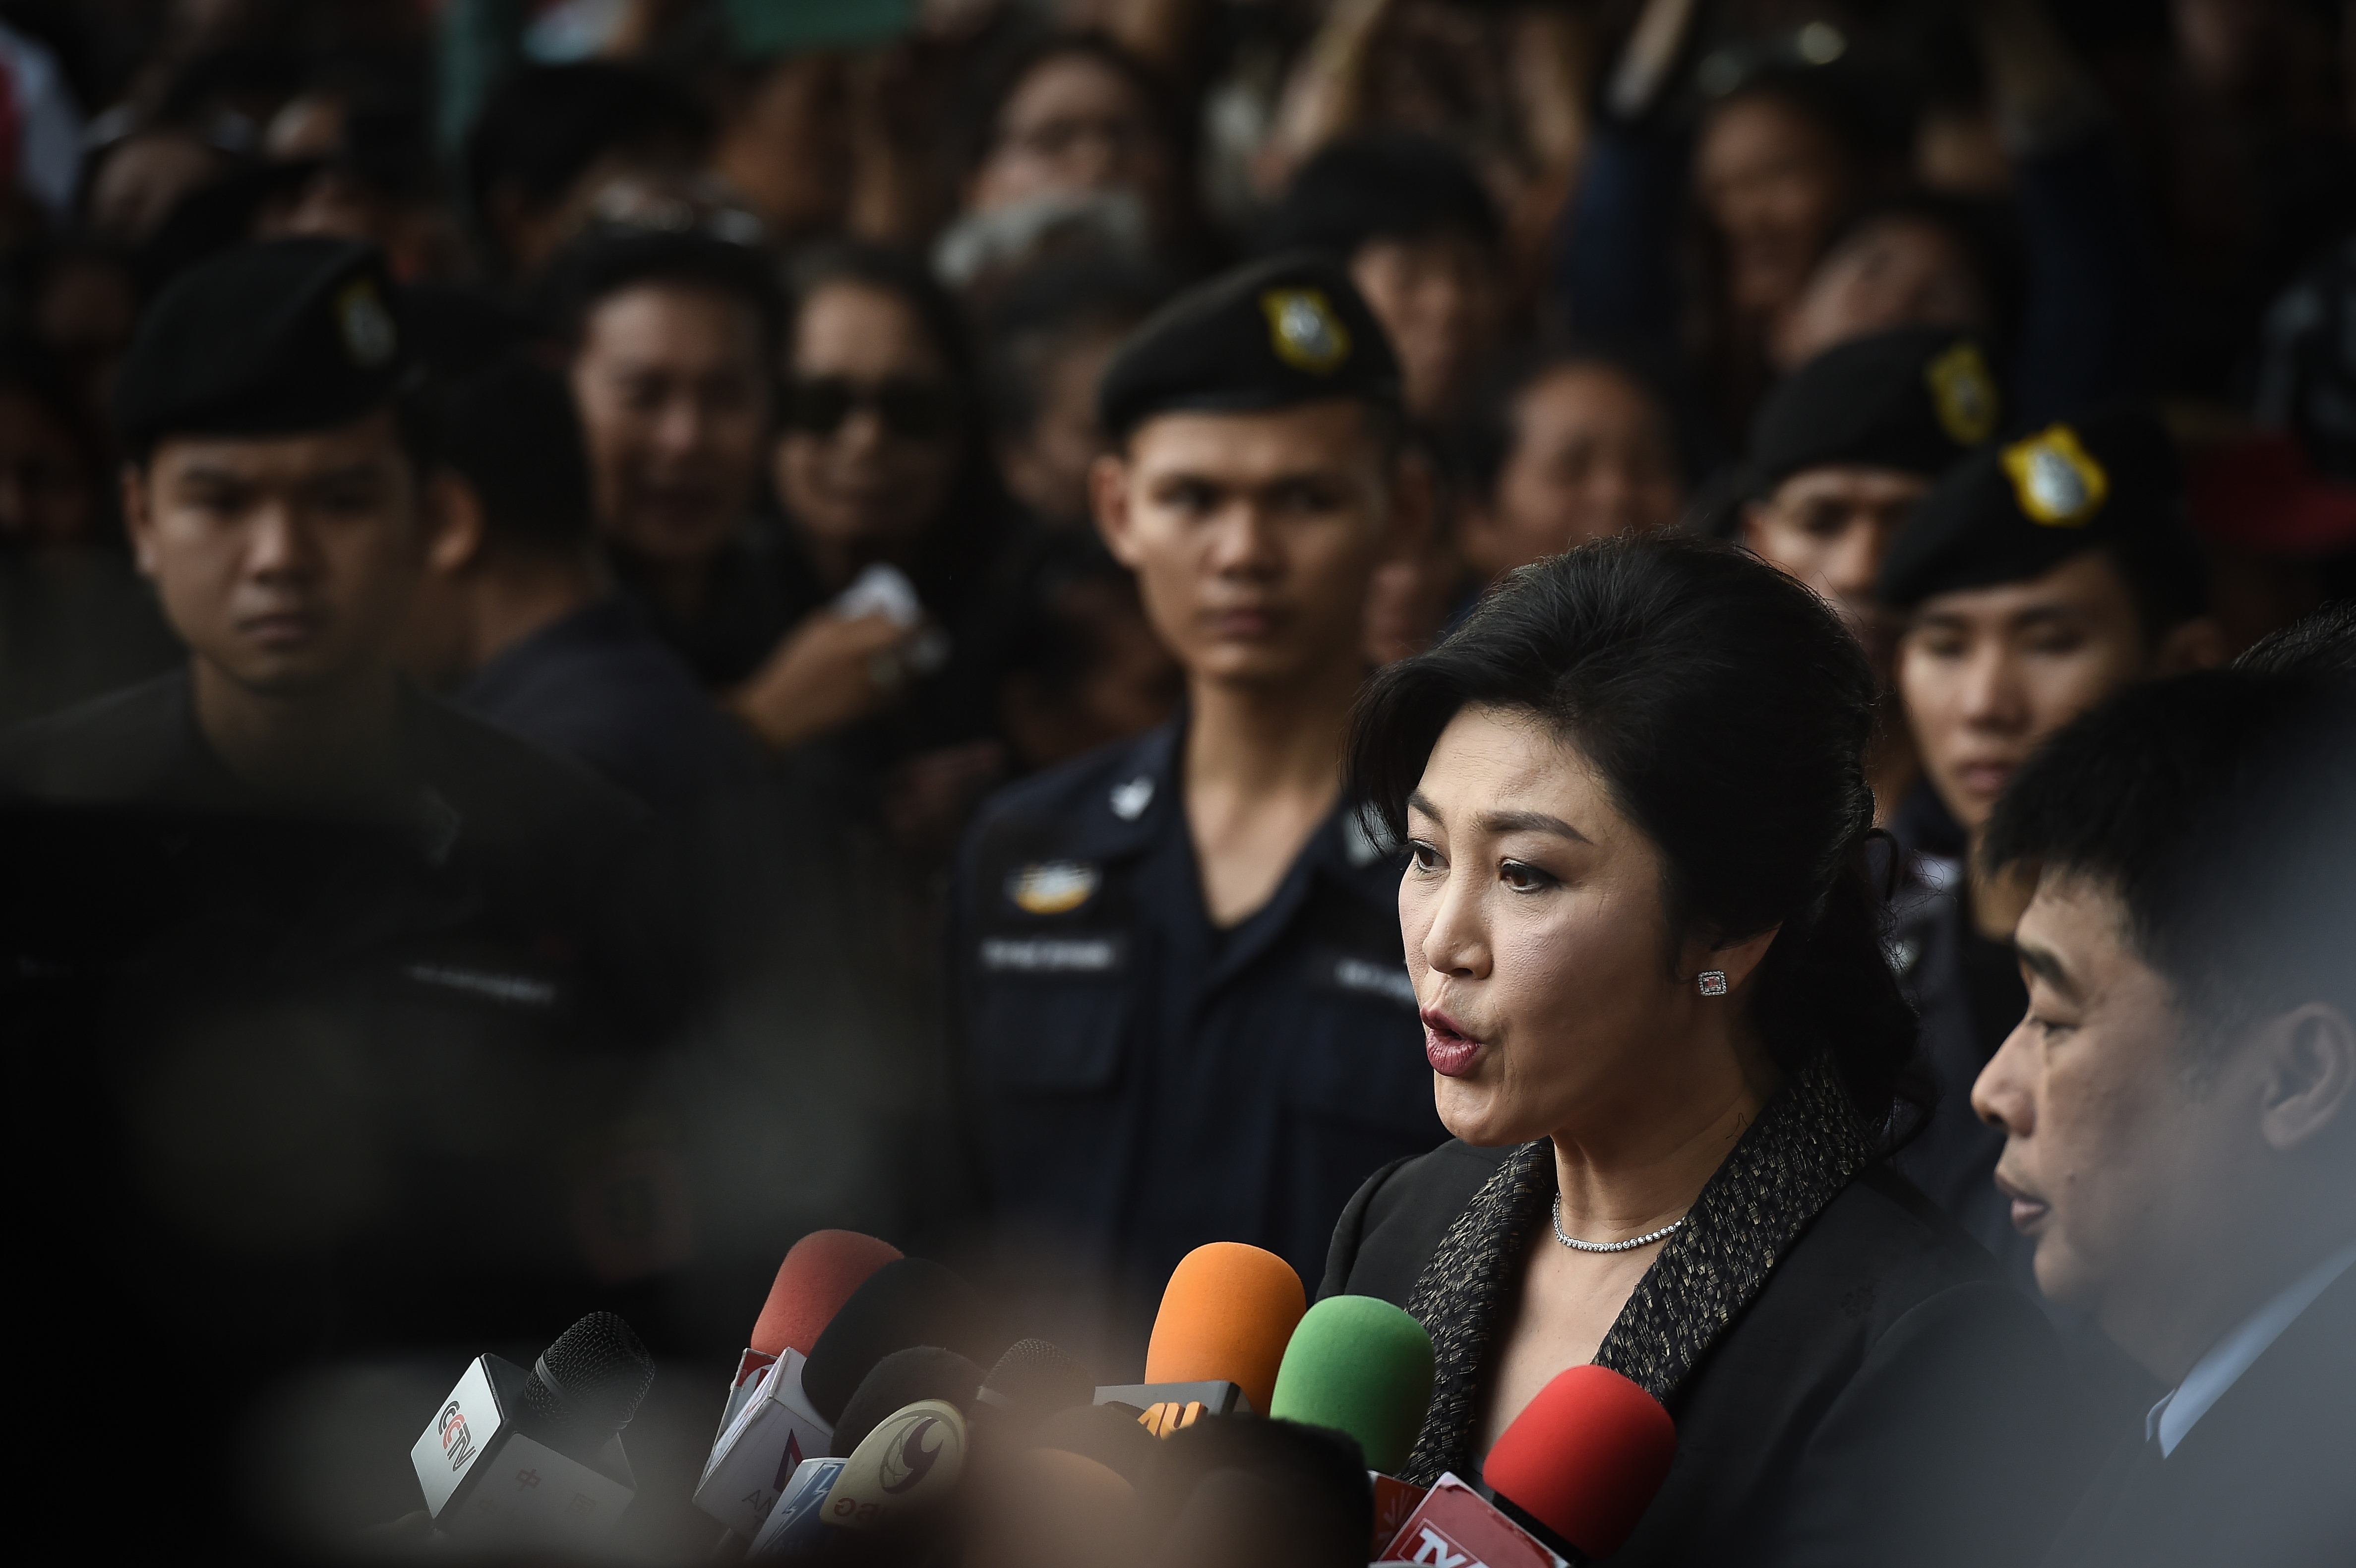 Öt év börtönre ítélték a volt thai miniszterelnököt